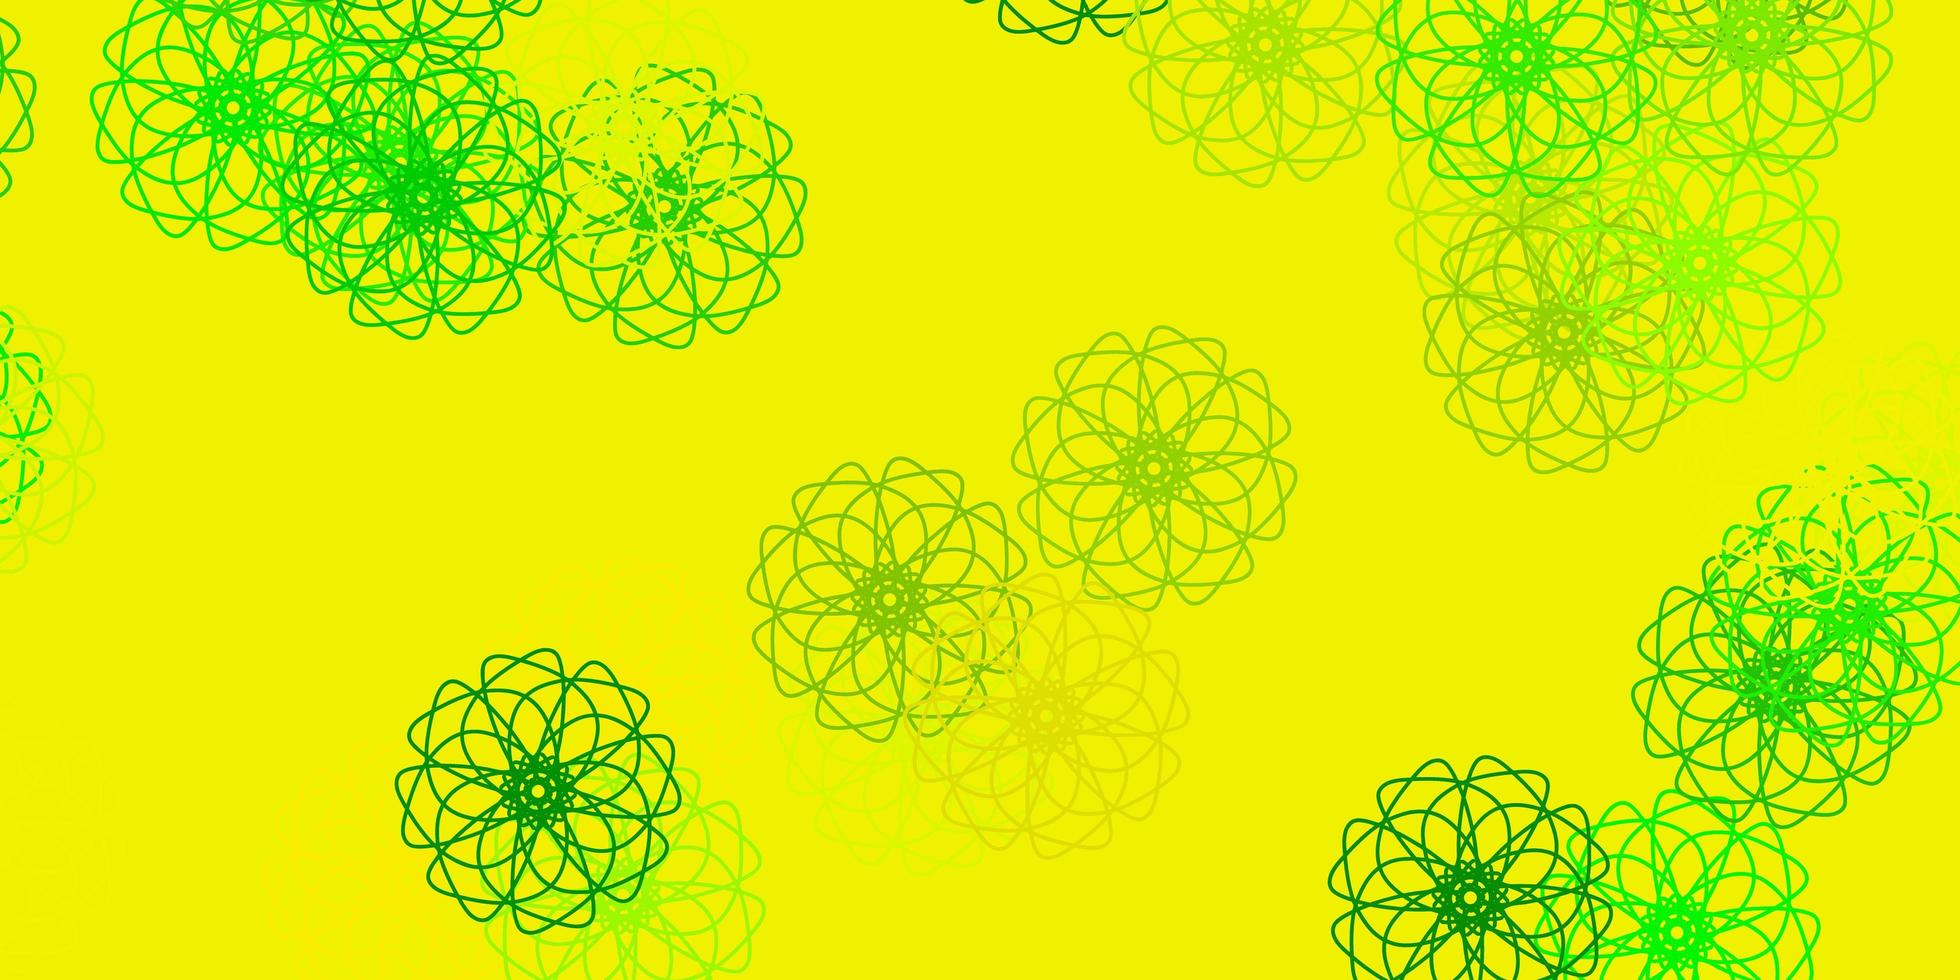 ljusgrön, gul vektorgrafikmall med blommor. vektor